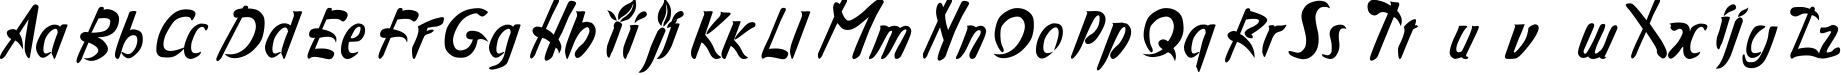 Пример написания английского алфавита шрифтом AppleJuiced